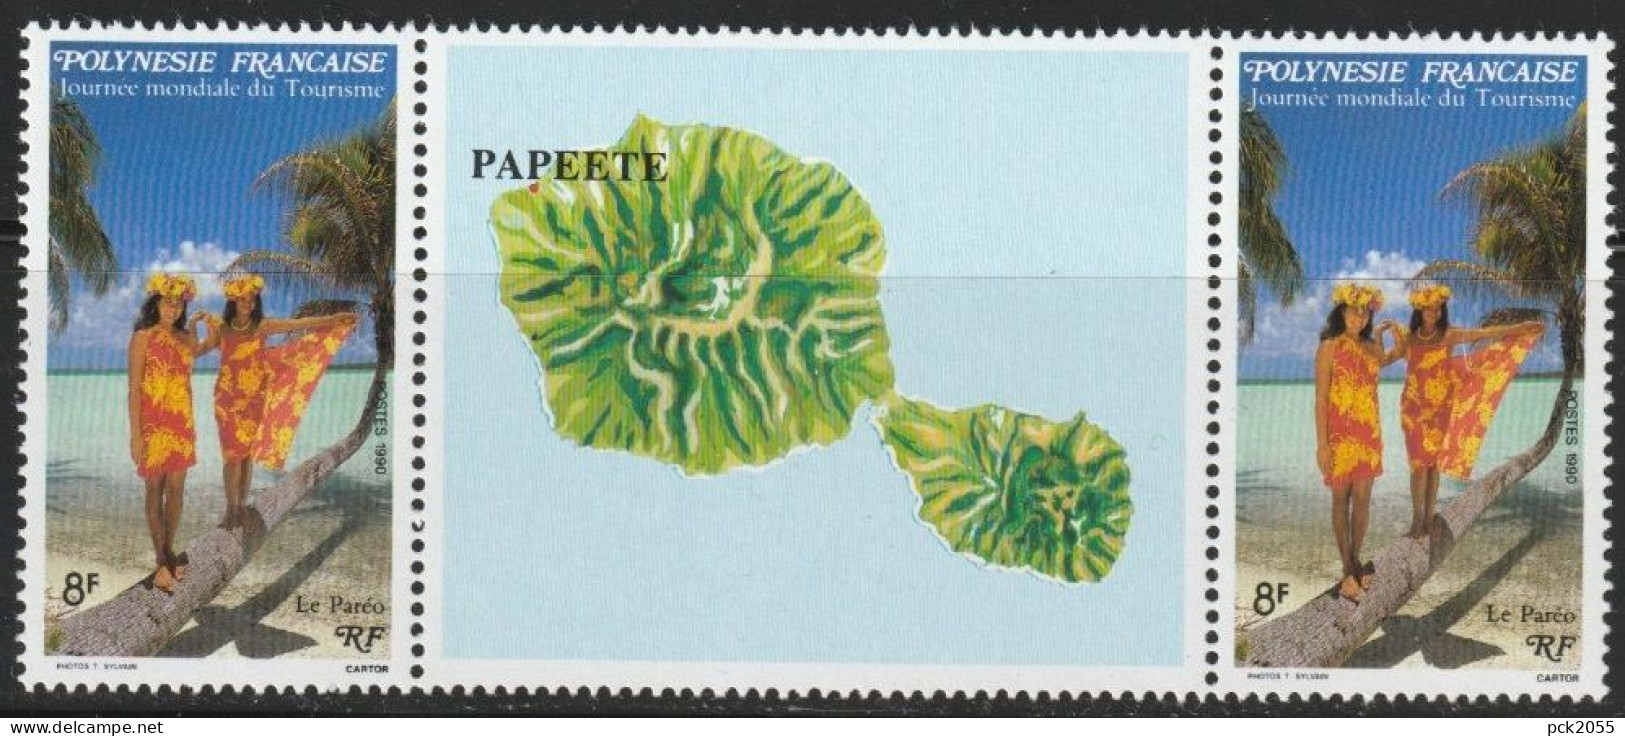 Französisch-Polynesien 1990  MiNr.565 Zierfeld 565 ( 664 )günstige Versandkosten - Ungebraucht